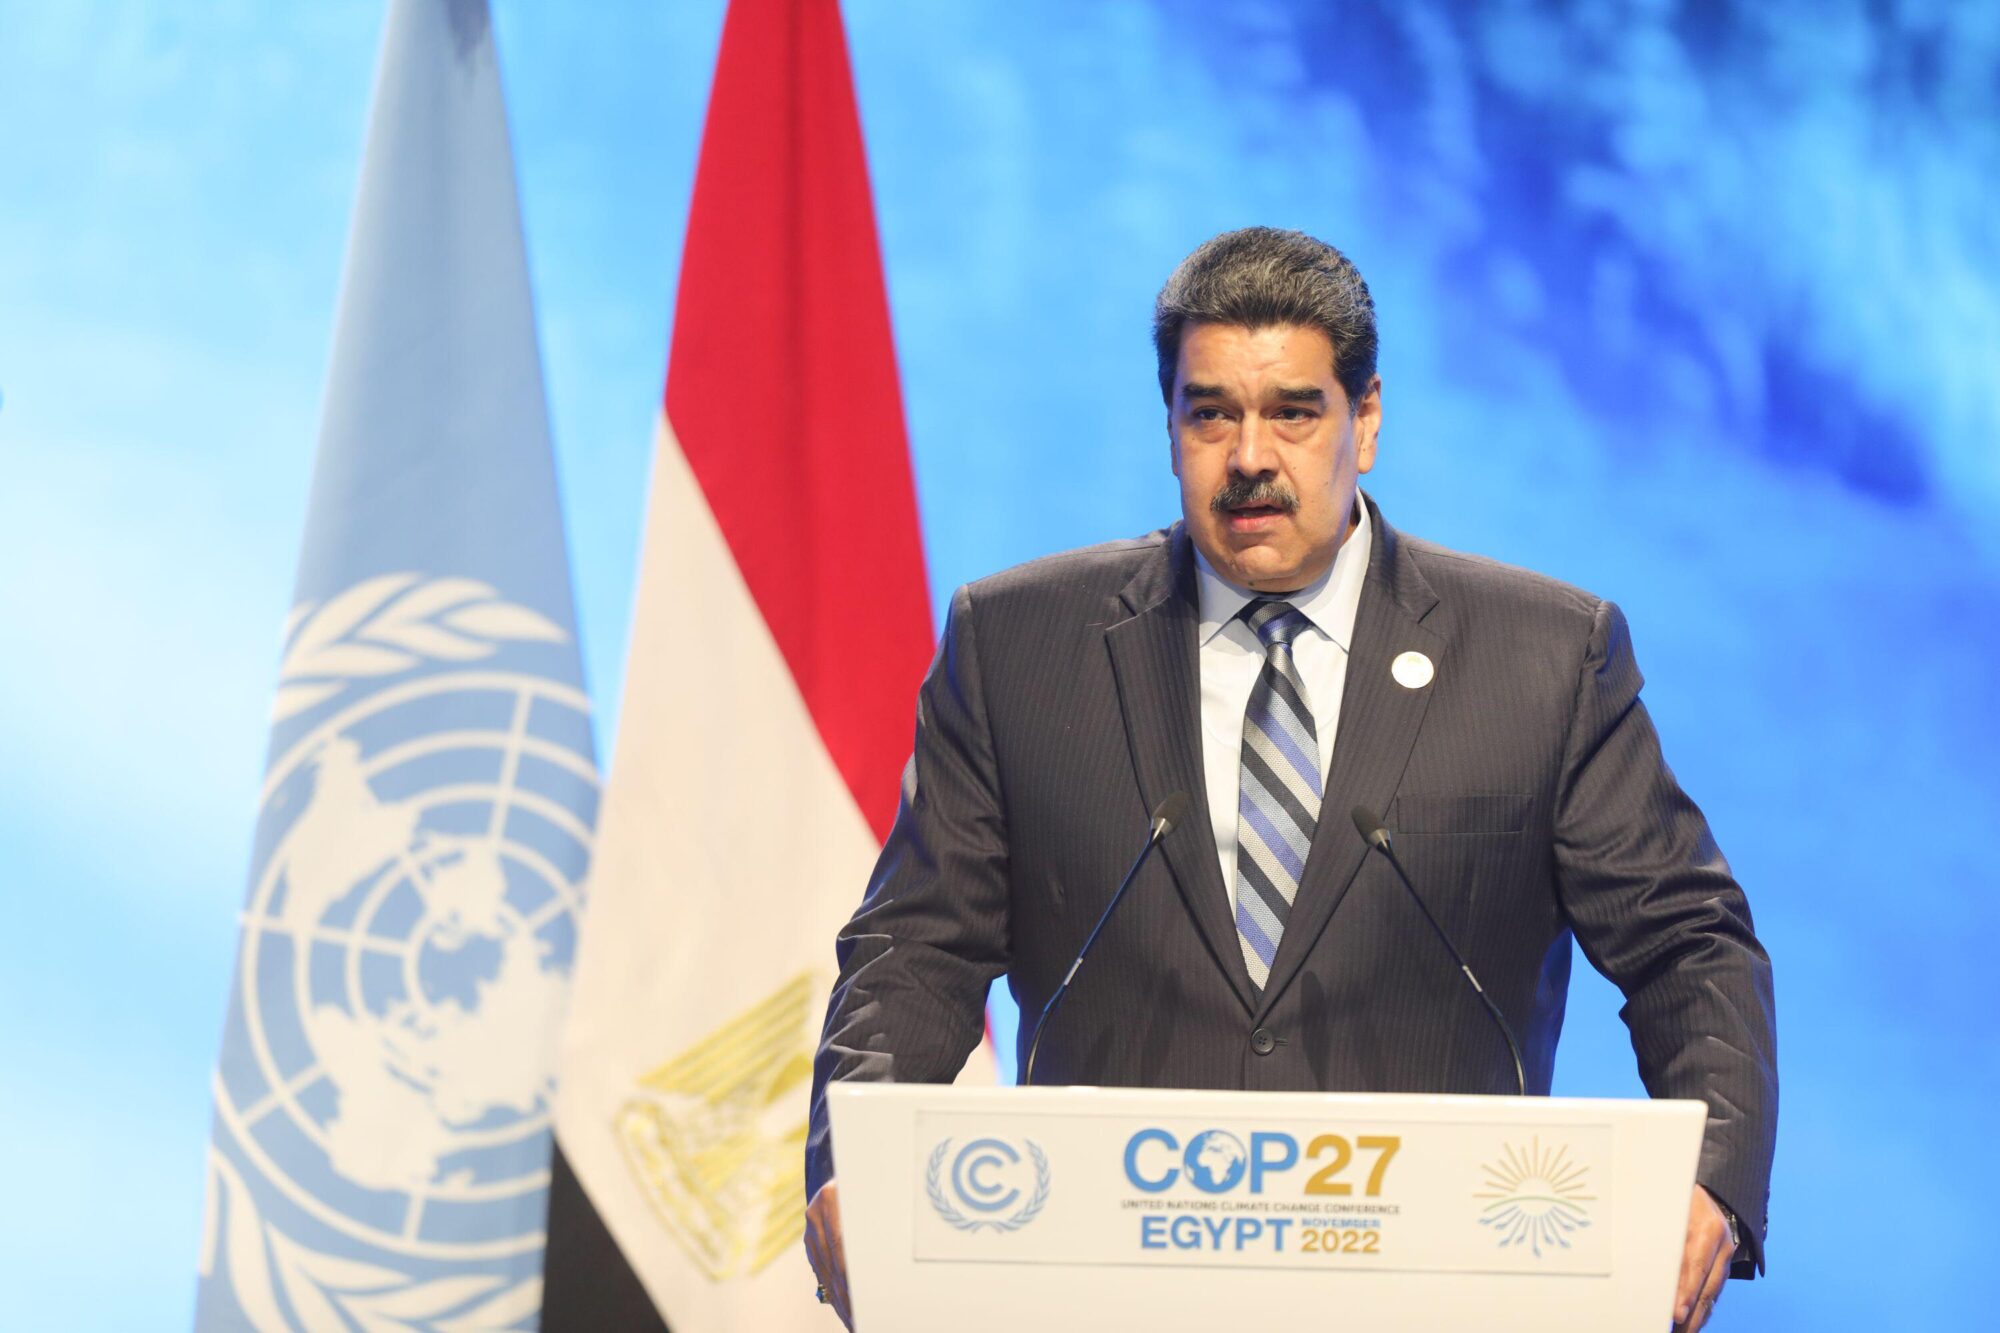 <p>Nicolás Maduro, presidente de Venezuela, fue uno de los mandatarios latinoamericanos presentes en la COP27. La región mostró avances en su unidad a través de un nuevo documento conjunto que<span style="font-weight: 400;"> resalta la necesidad de financiamiento climático</span> (Imagen: Prensa Miraflores / dpa / Alamy)</p>